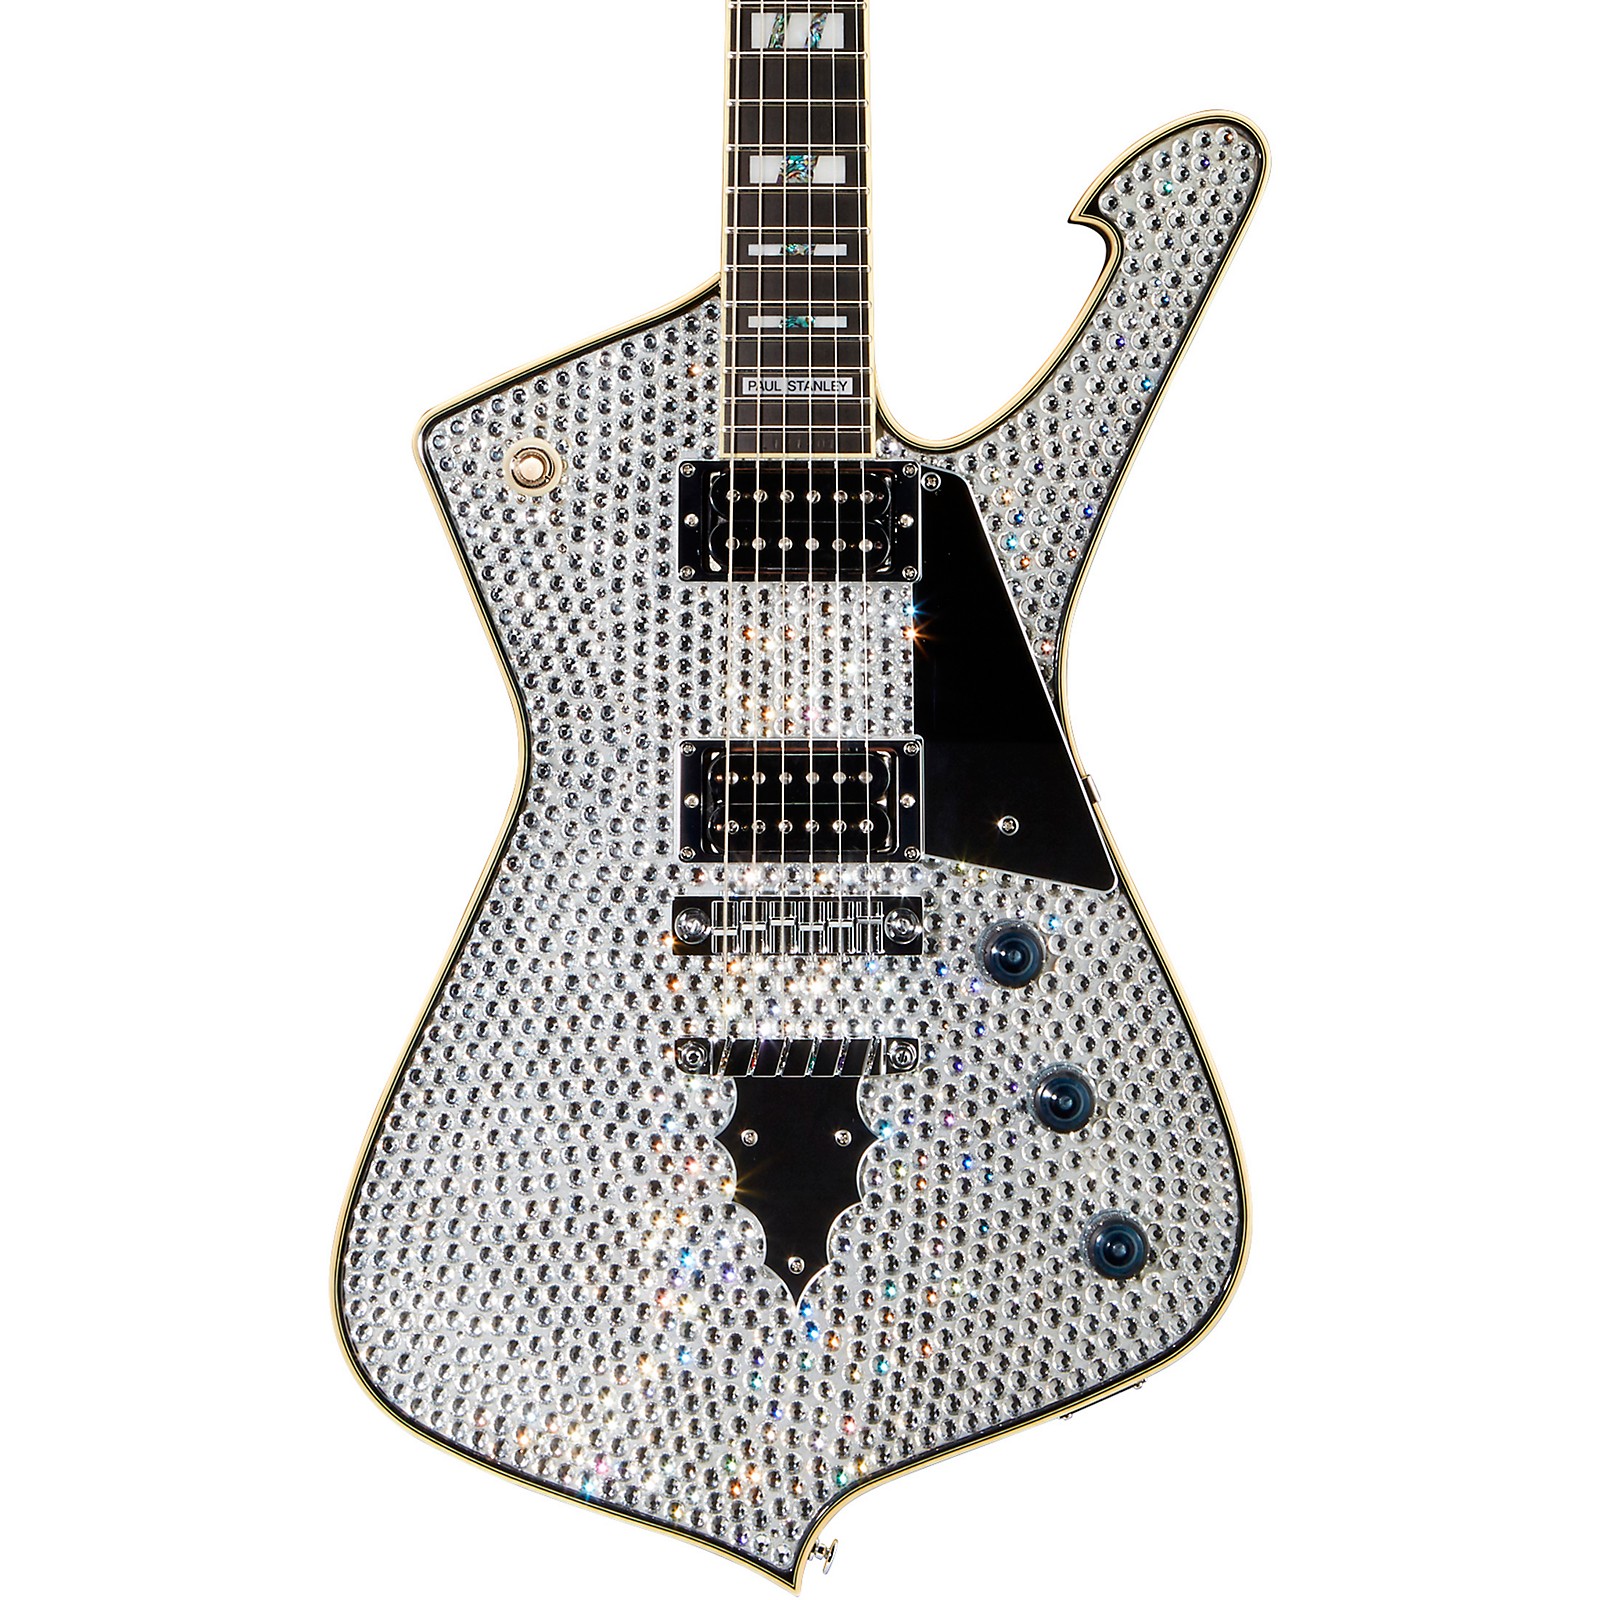 Ibanez Ps1dm Paul Stanley Signature Electric Guitar Chrome Silver Musicians Friend